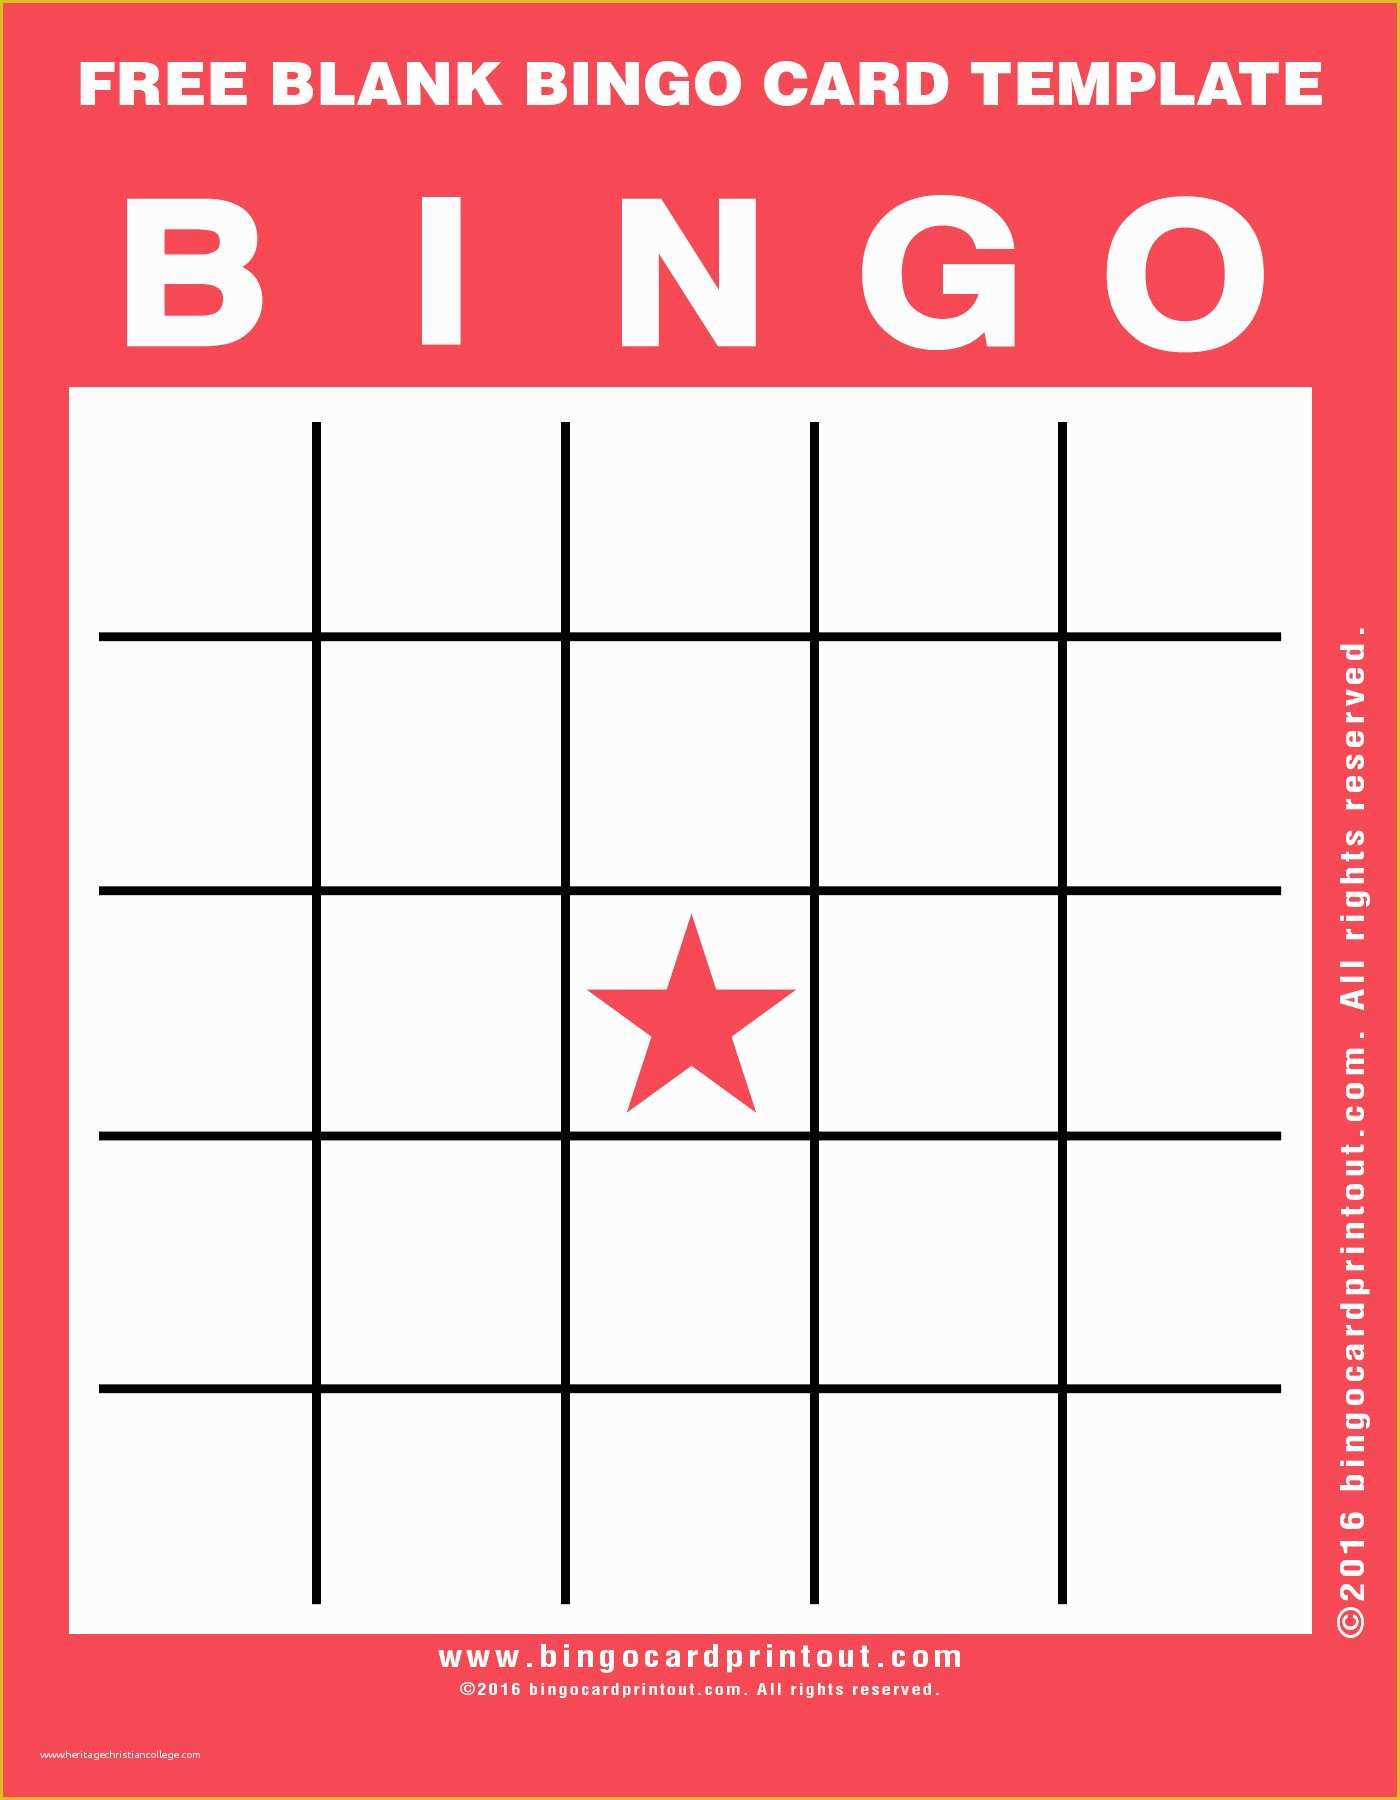 Bingo Card Template Free Of Free Blank Bingo Card Template Bingocardprintout